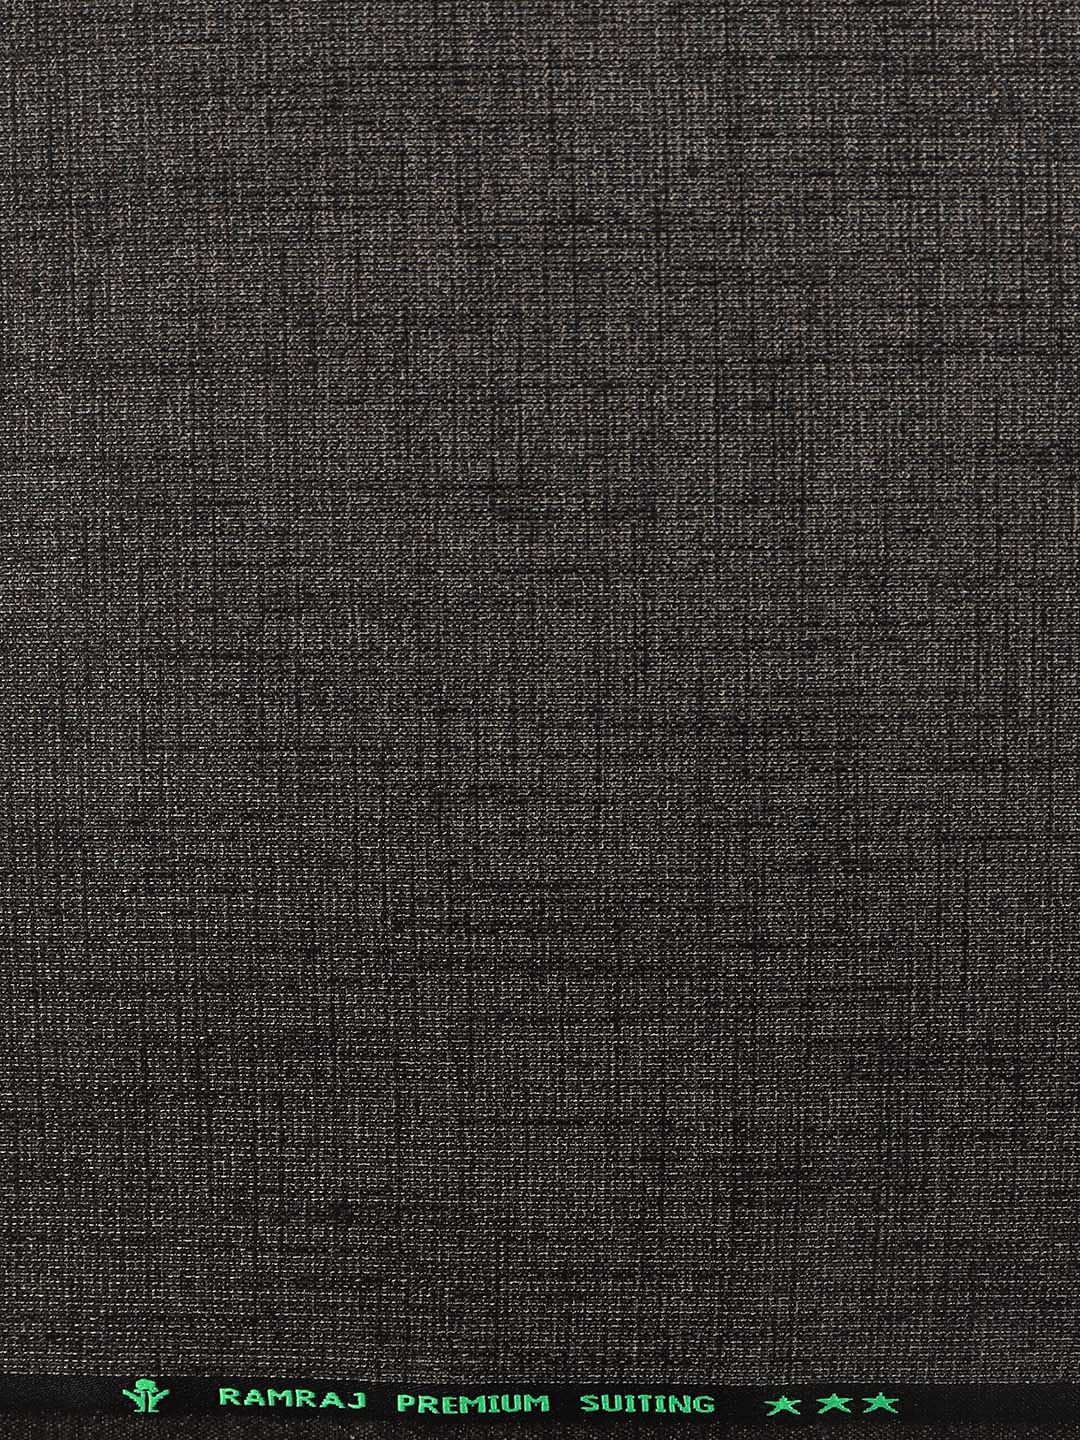 Premium Cotton Colour Black Pants Fabric Air Craft-Zoom view